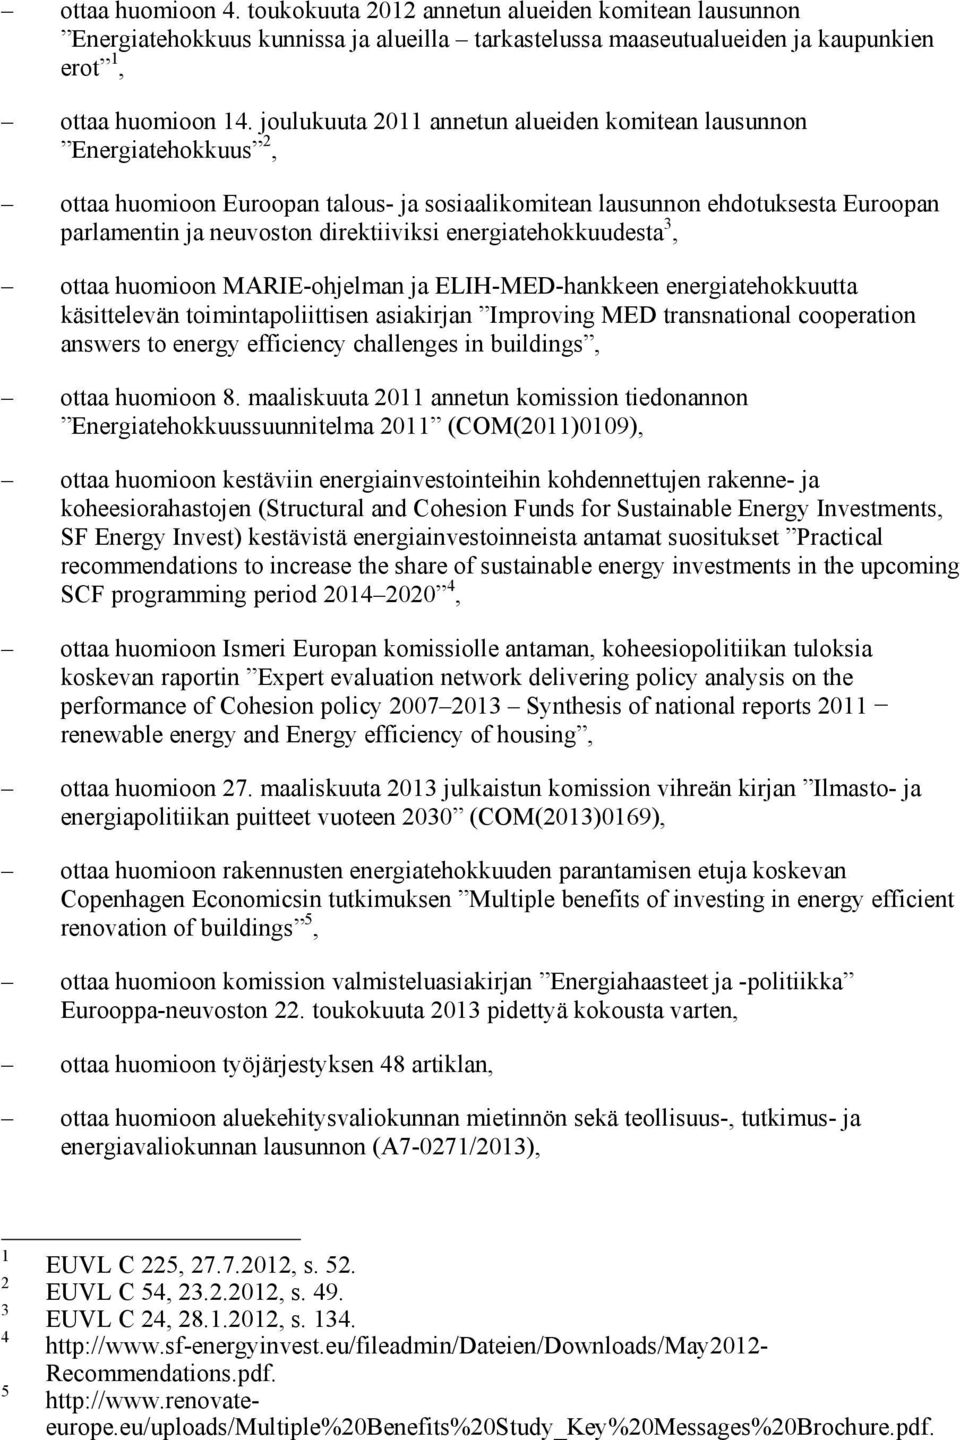 energiatehokkuudesta 3, ottaa huomioon MARIE-ohjelman ja ELIH-MED-hankkeen energiatehokkuutta käsittelevän toimintapoliittisen asiakirjan Improving MED transnational cooperation answers to energy